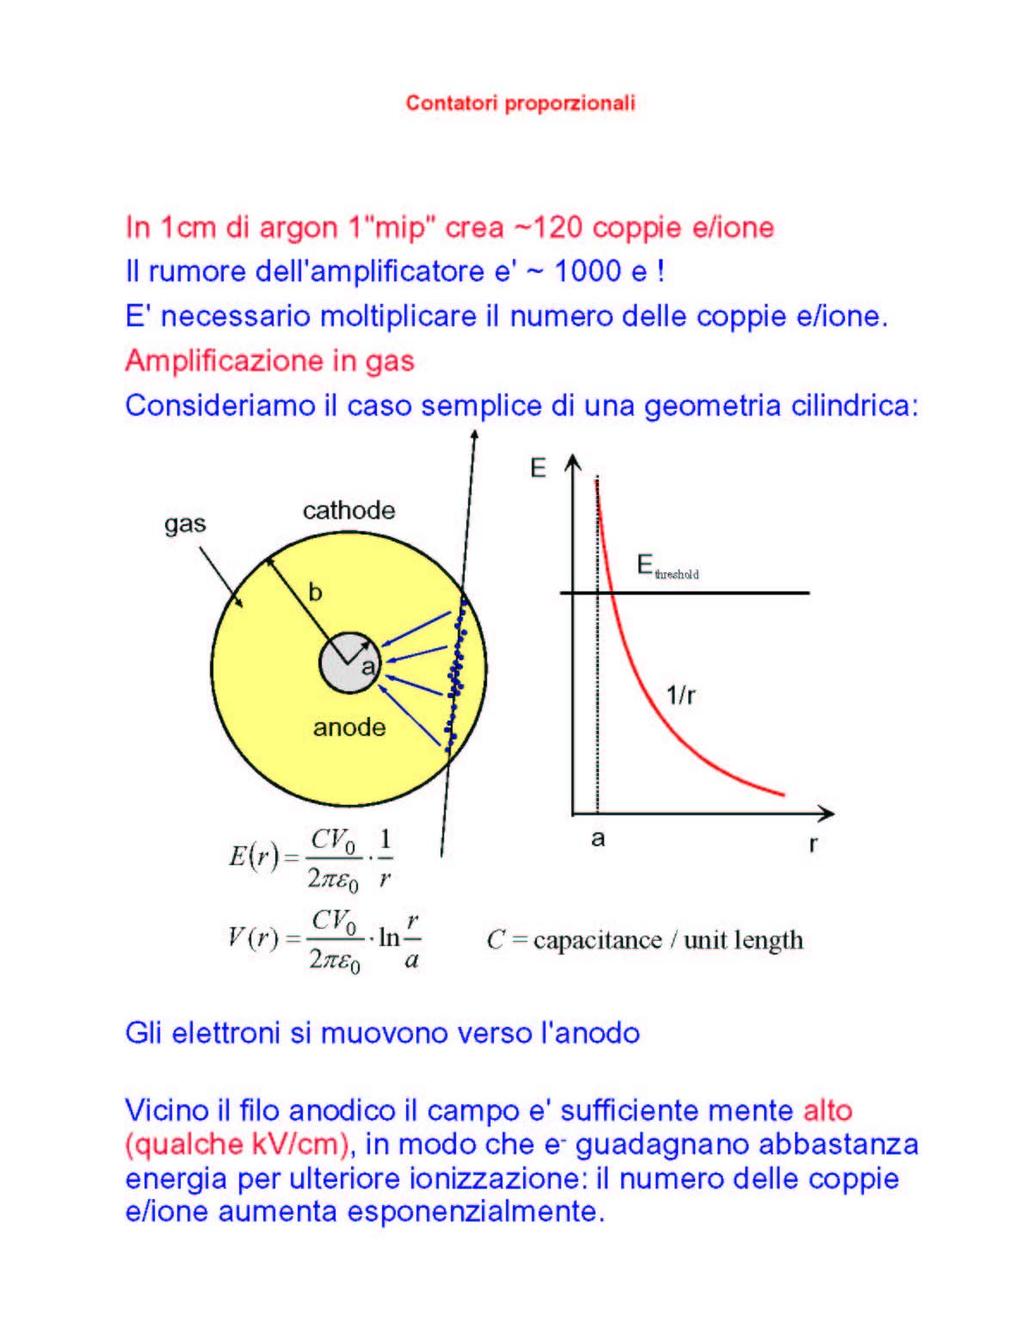 N total ne V = = µ V; C ~ 10 pf C numero di coppie ione/elettrone medio prodotte da un mip a pressione